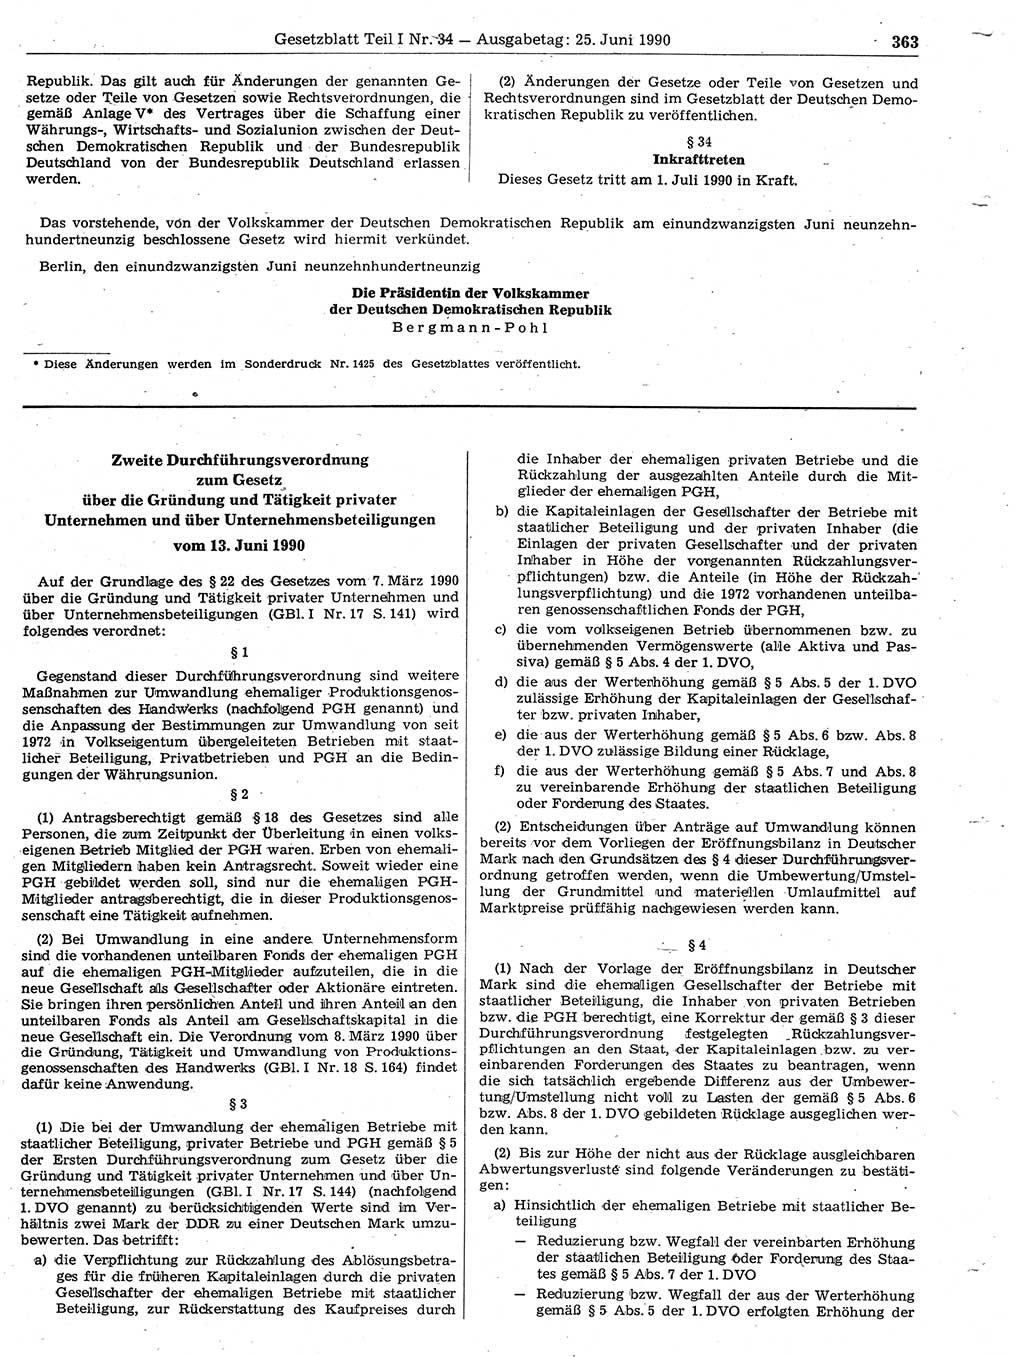 Gesetzblatt (GBl.) der Deutschen Demokratischen Republik (DDR) Teil Ⅰ 1990, Seite 363 (GBl. DDR Ⅰ 1990, S. 363)